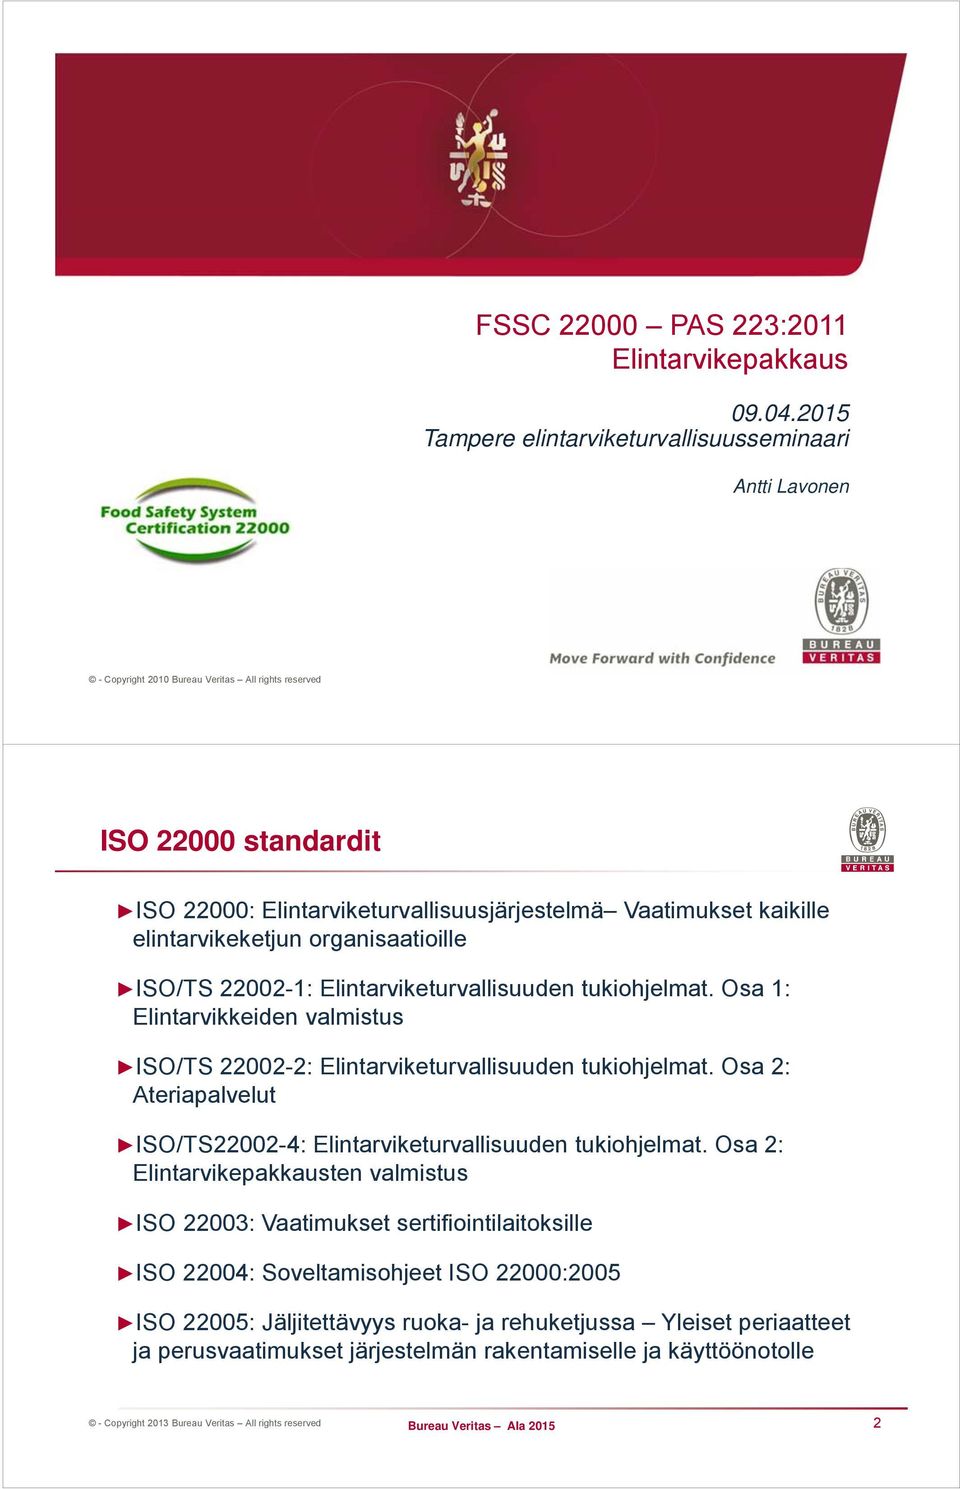 elintarvikeketjun organisaatioille ISO/TS 22002-1: Elintarviketurvallisuuden tukiohjelmat. Osa 1: Elintarvikkeiden valmistus ISO/TS 22002-2: Elintarviketurvallisuuden tukiohjelmat.